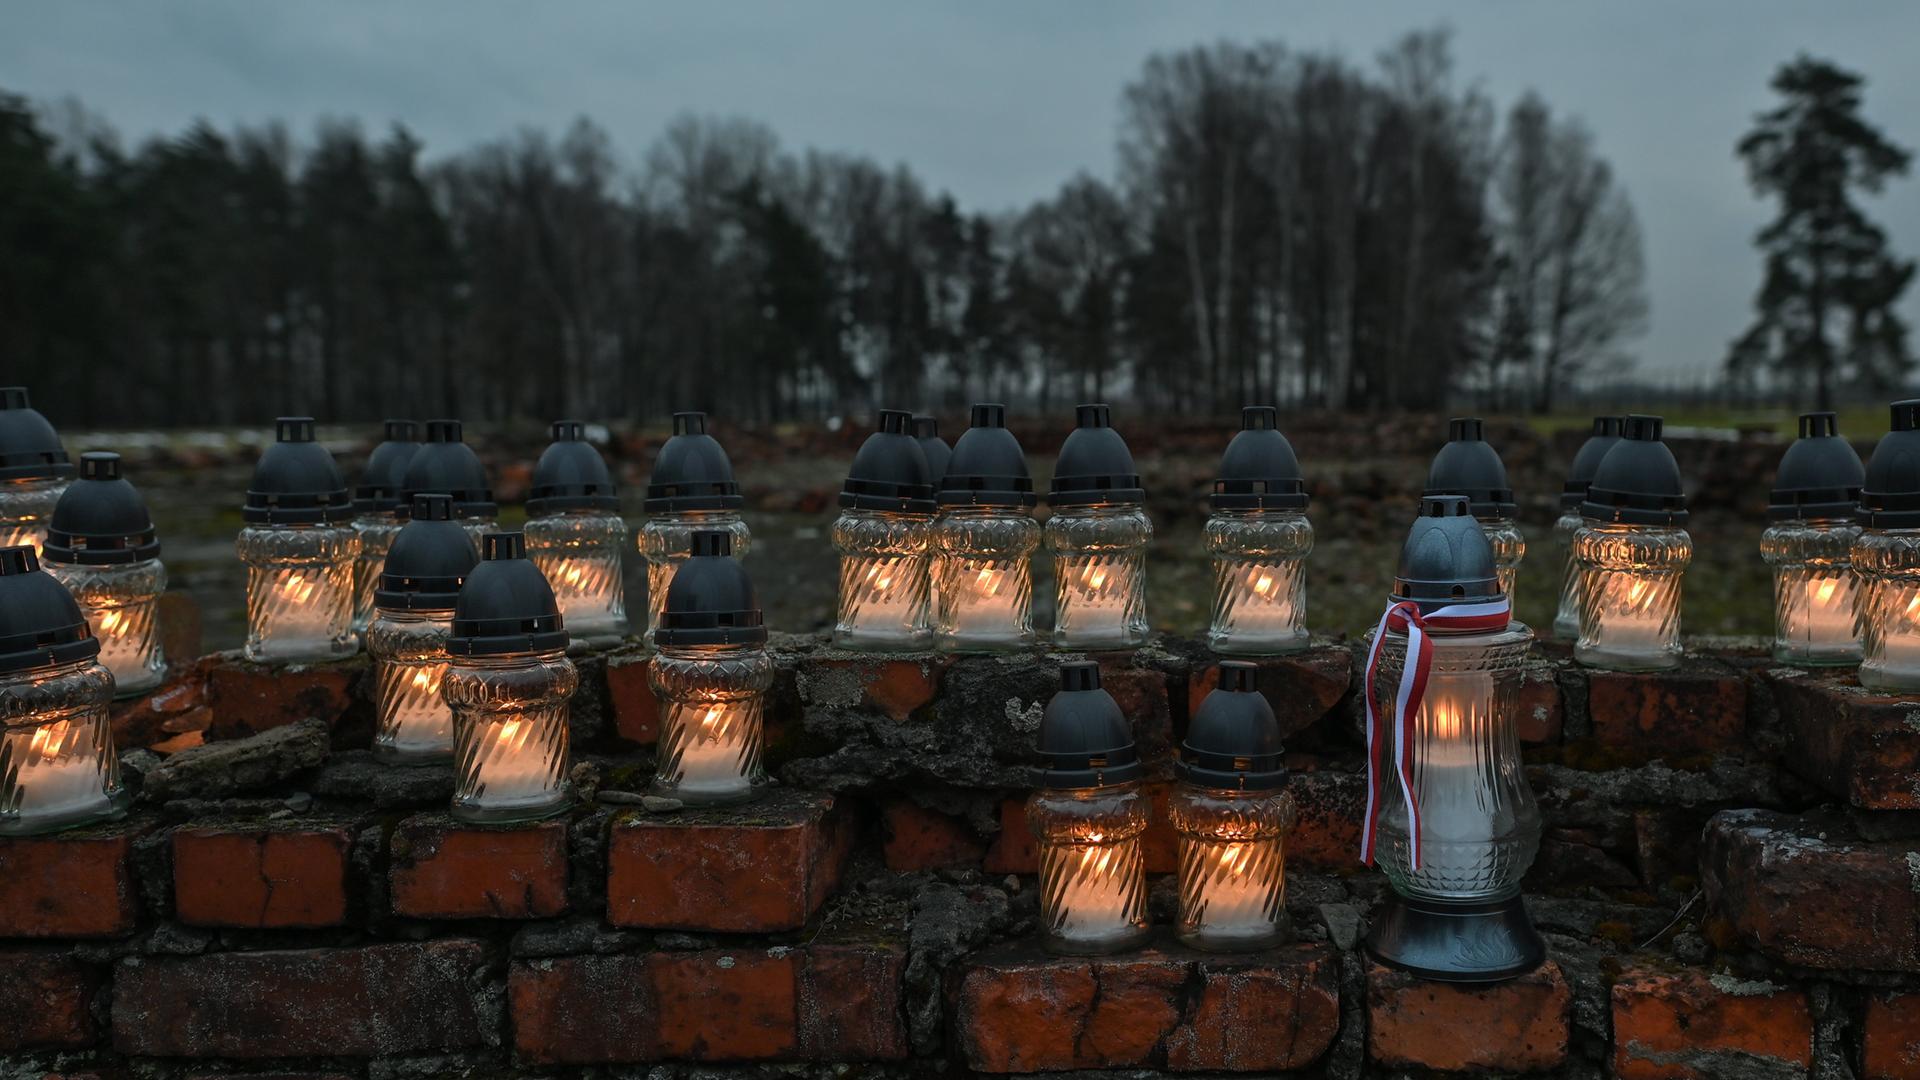 Windgeschützte Kerzen und Lampen stehen auf einem brüchigen Mauerwerk. Im Hintergrund sind Bäume zu sehen.